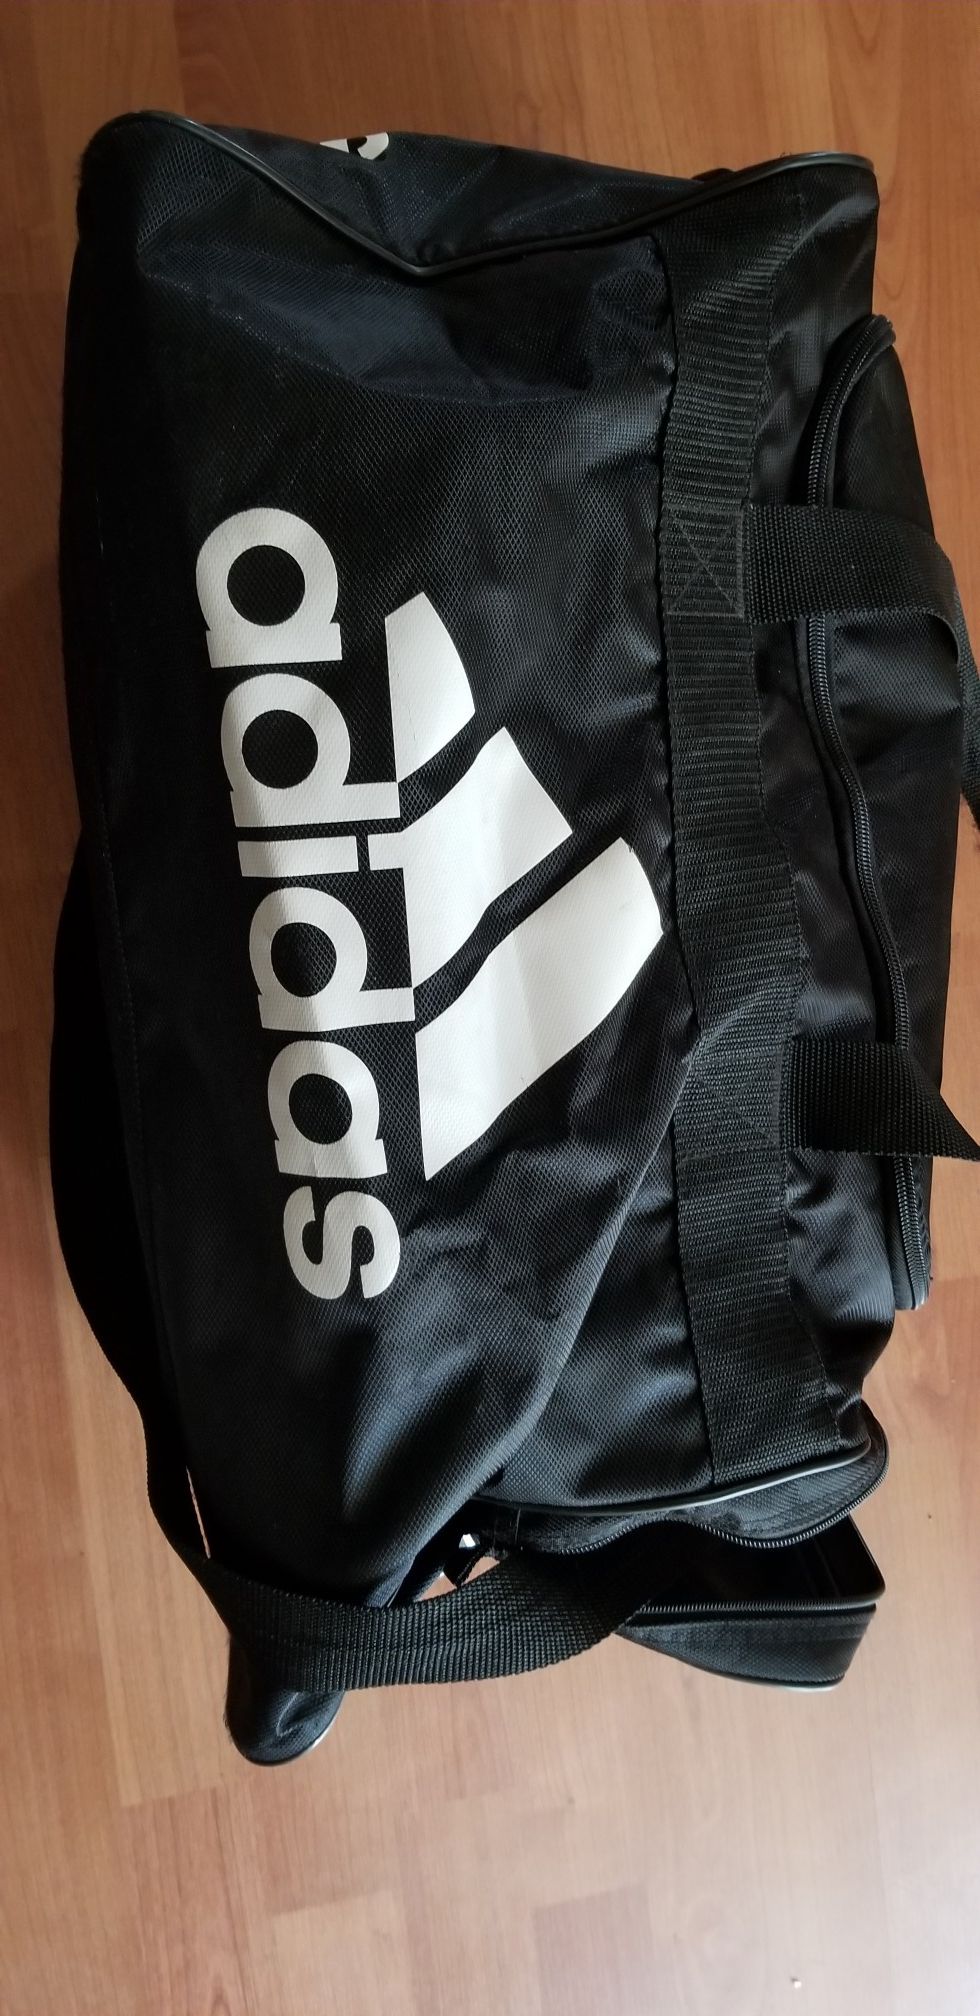 Adidas gym bag, Medium size